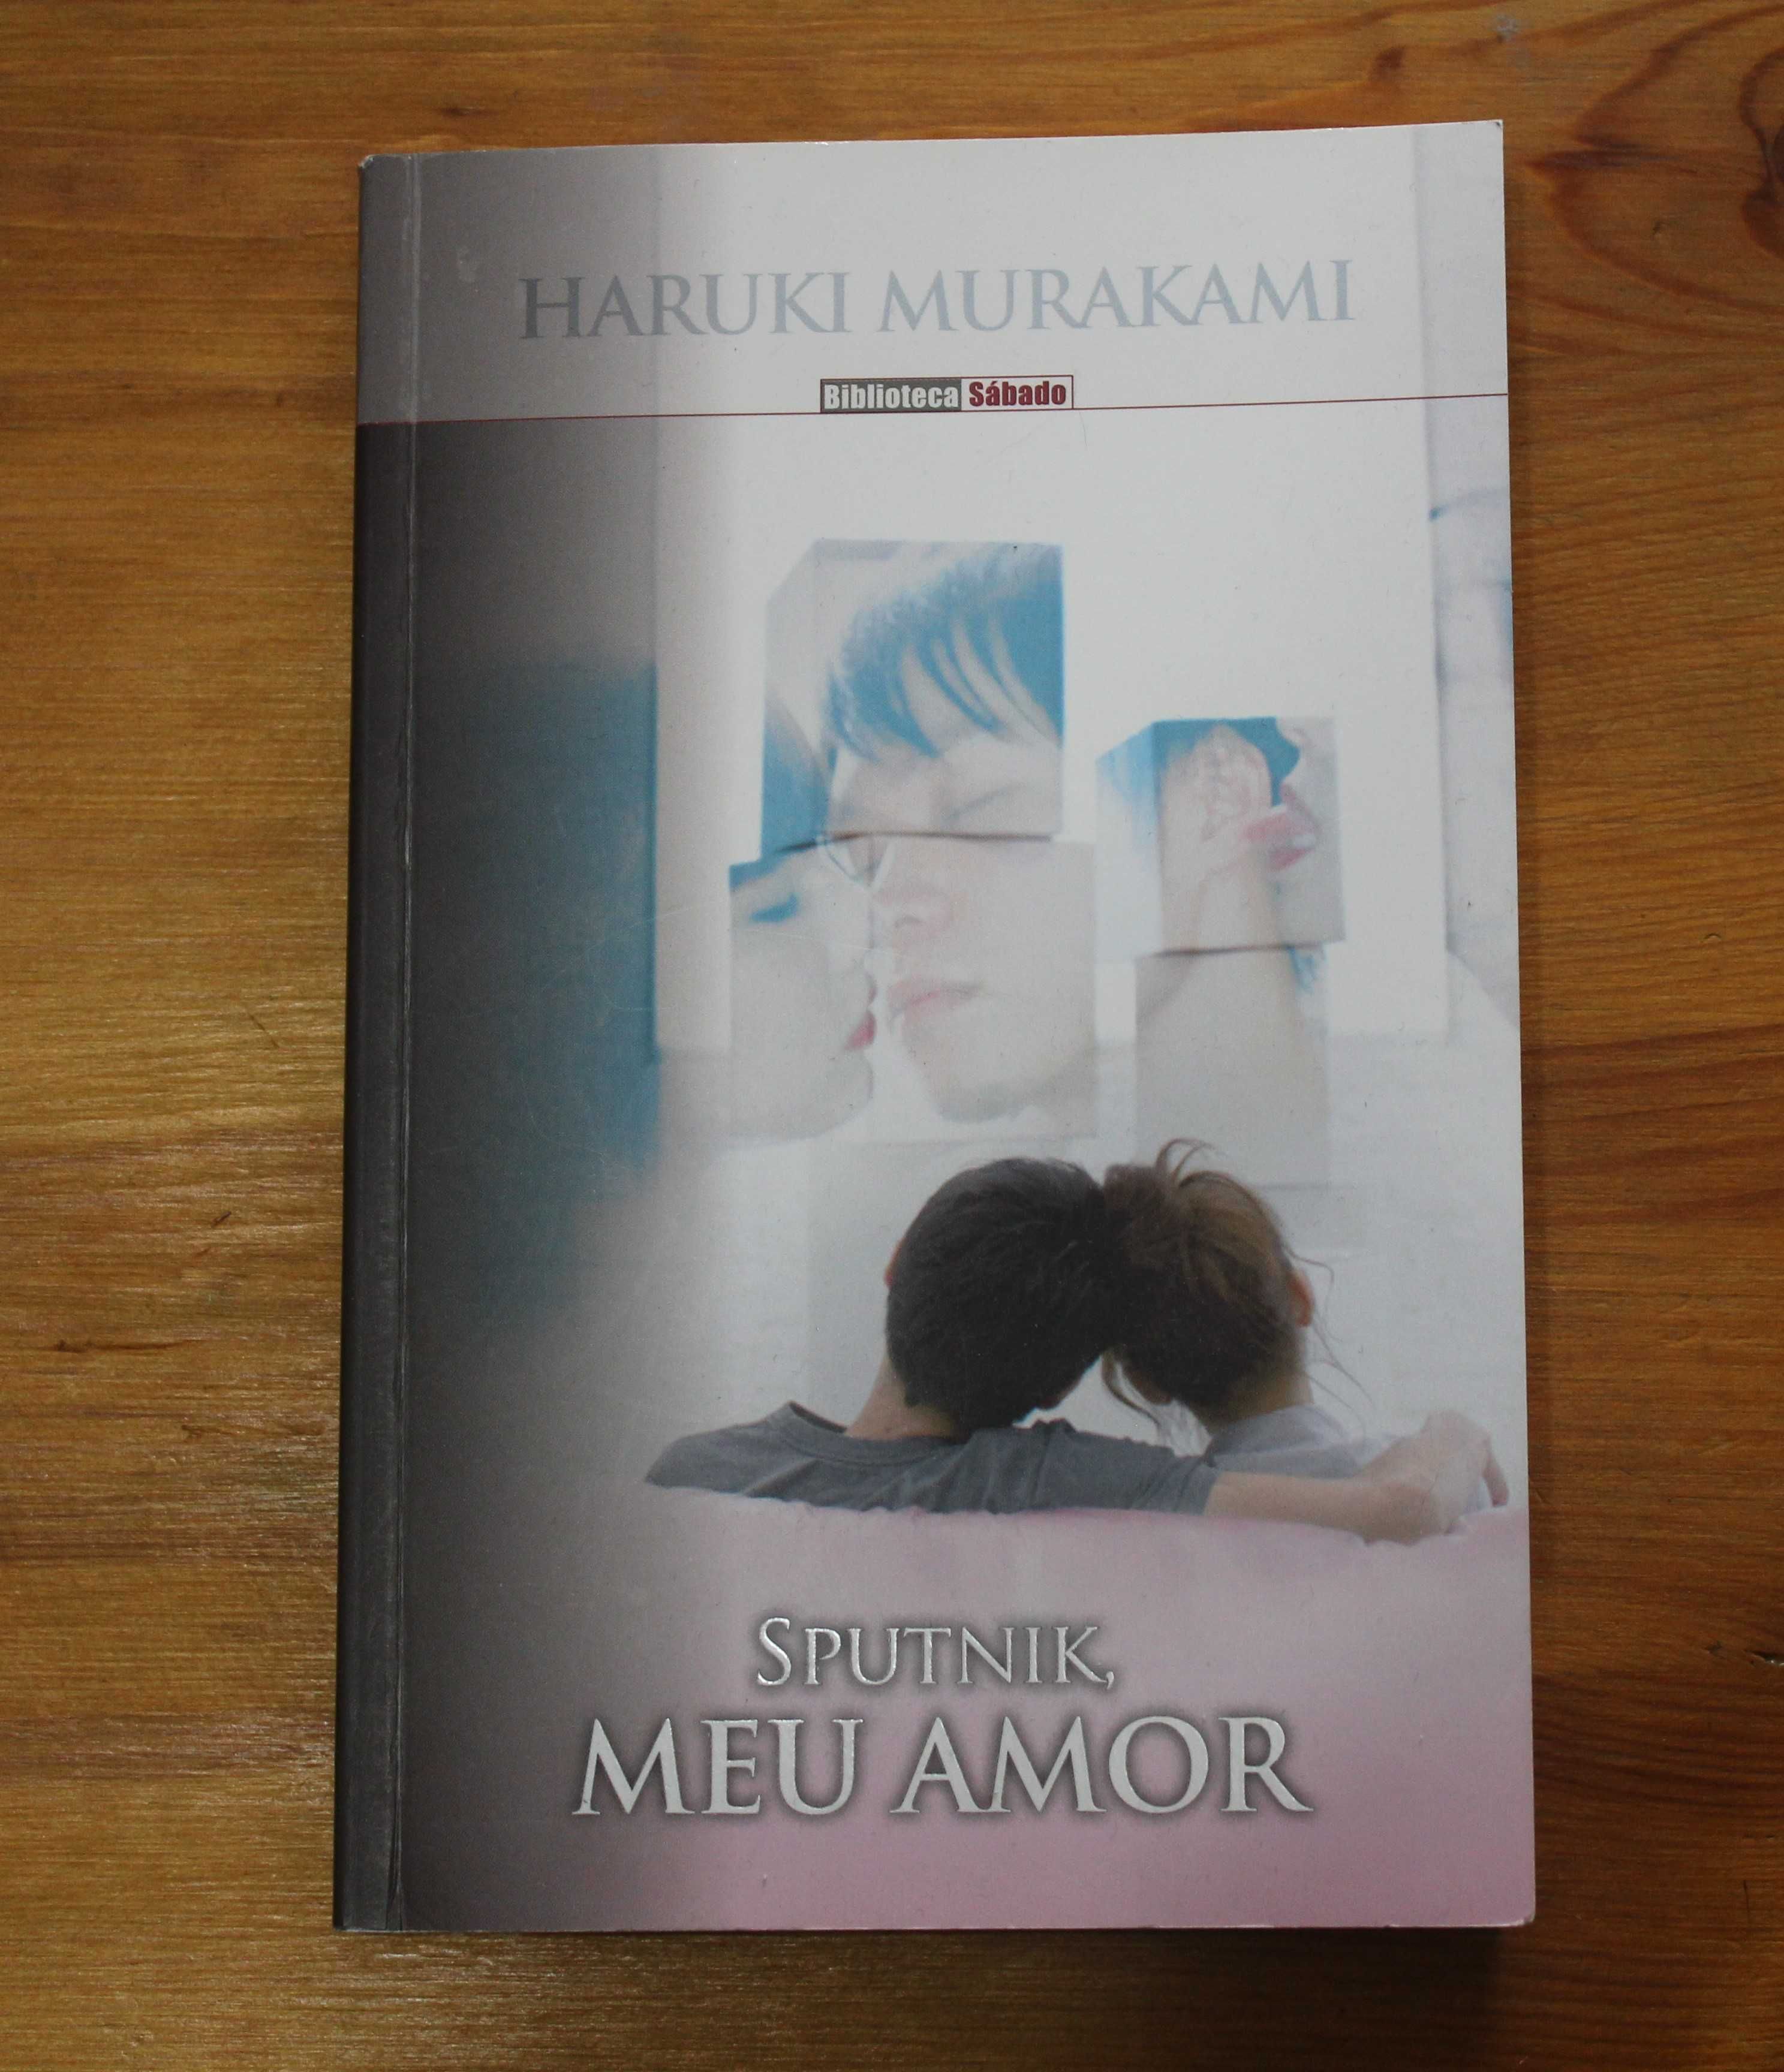 Livro "Sputnik, Meu Amor", de Haruki Murakami